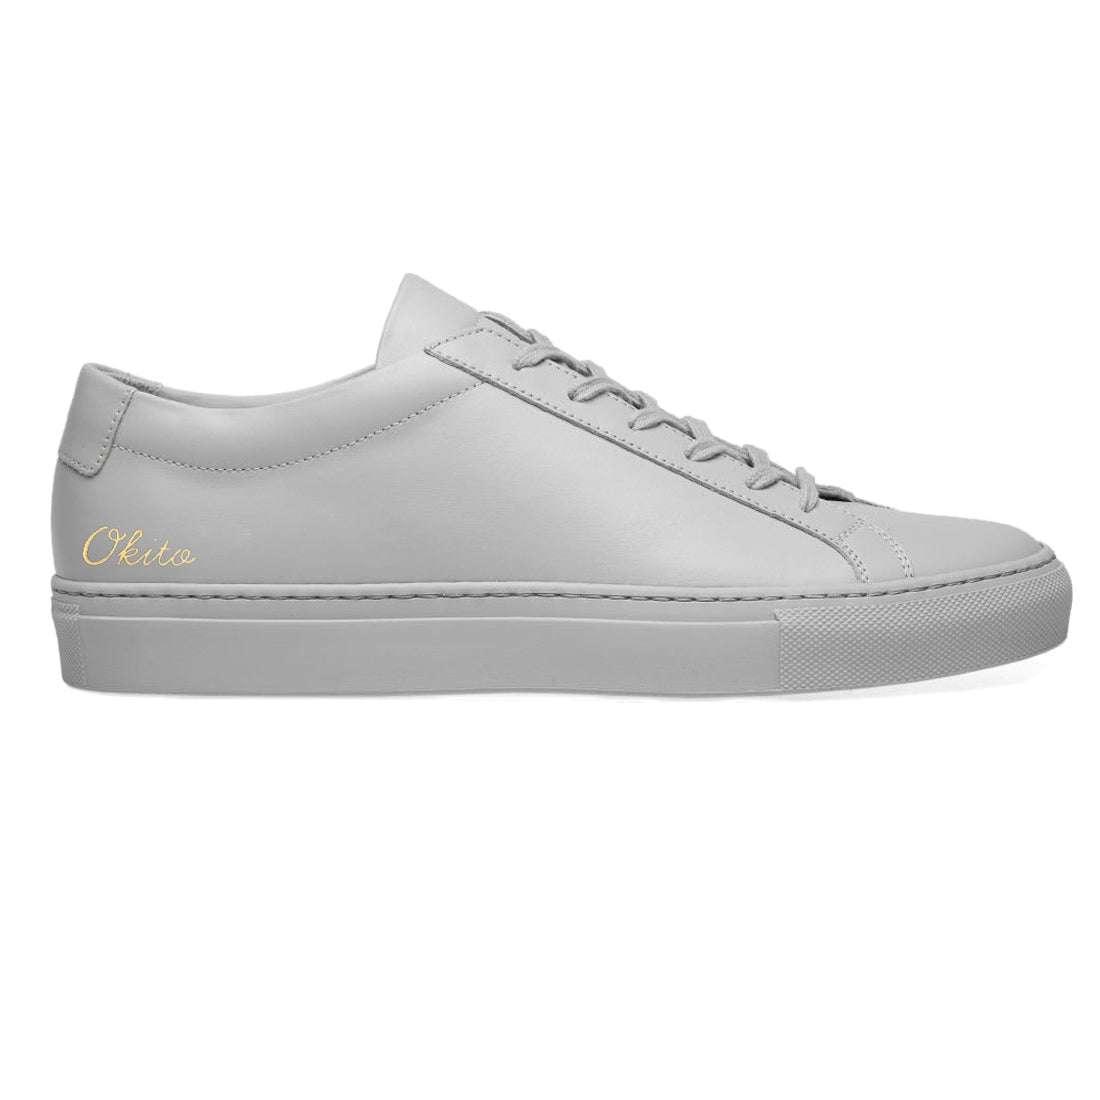 Zudio Grey Lace Up Sneakers - Buy Zudio Grey Lace Up Sneakers